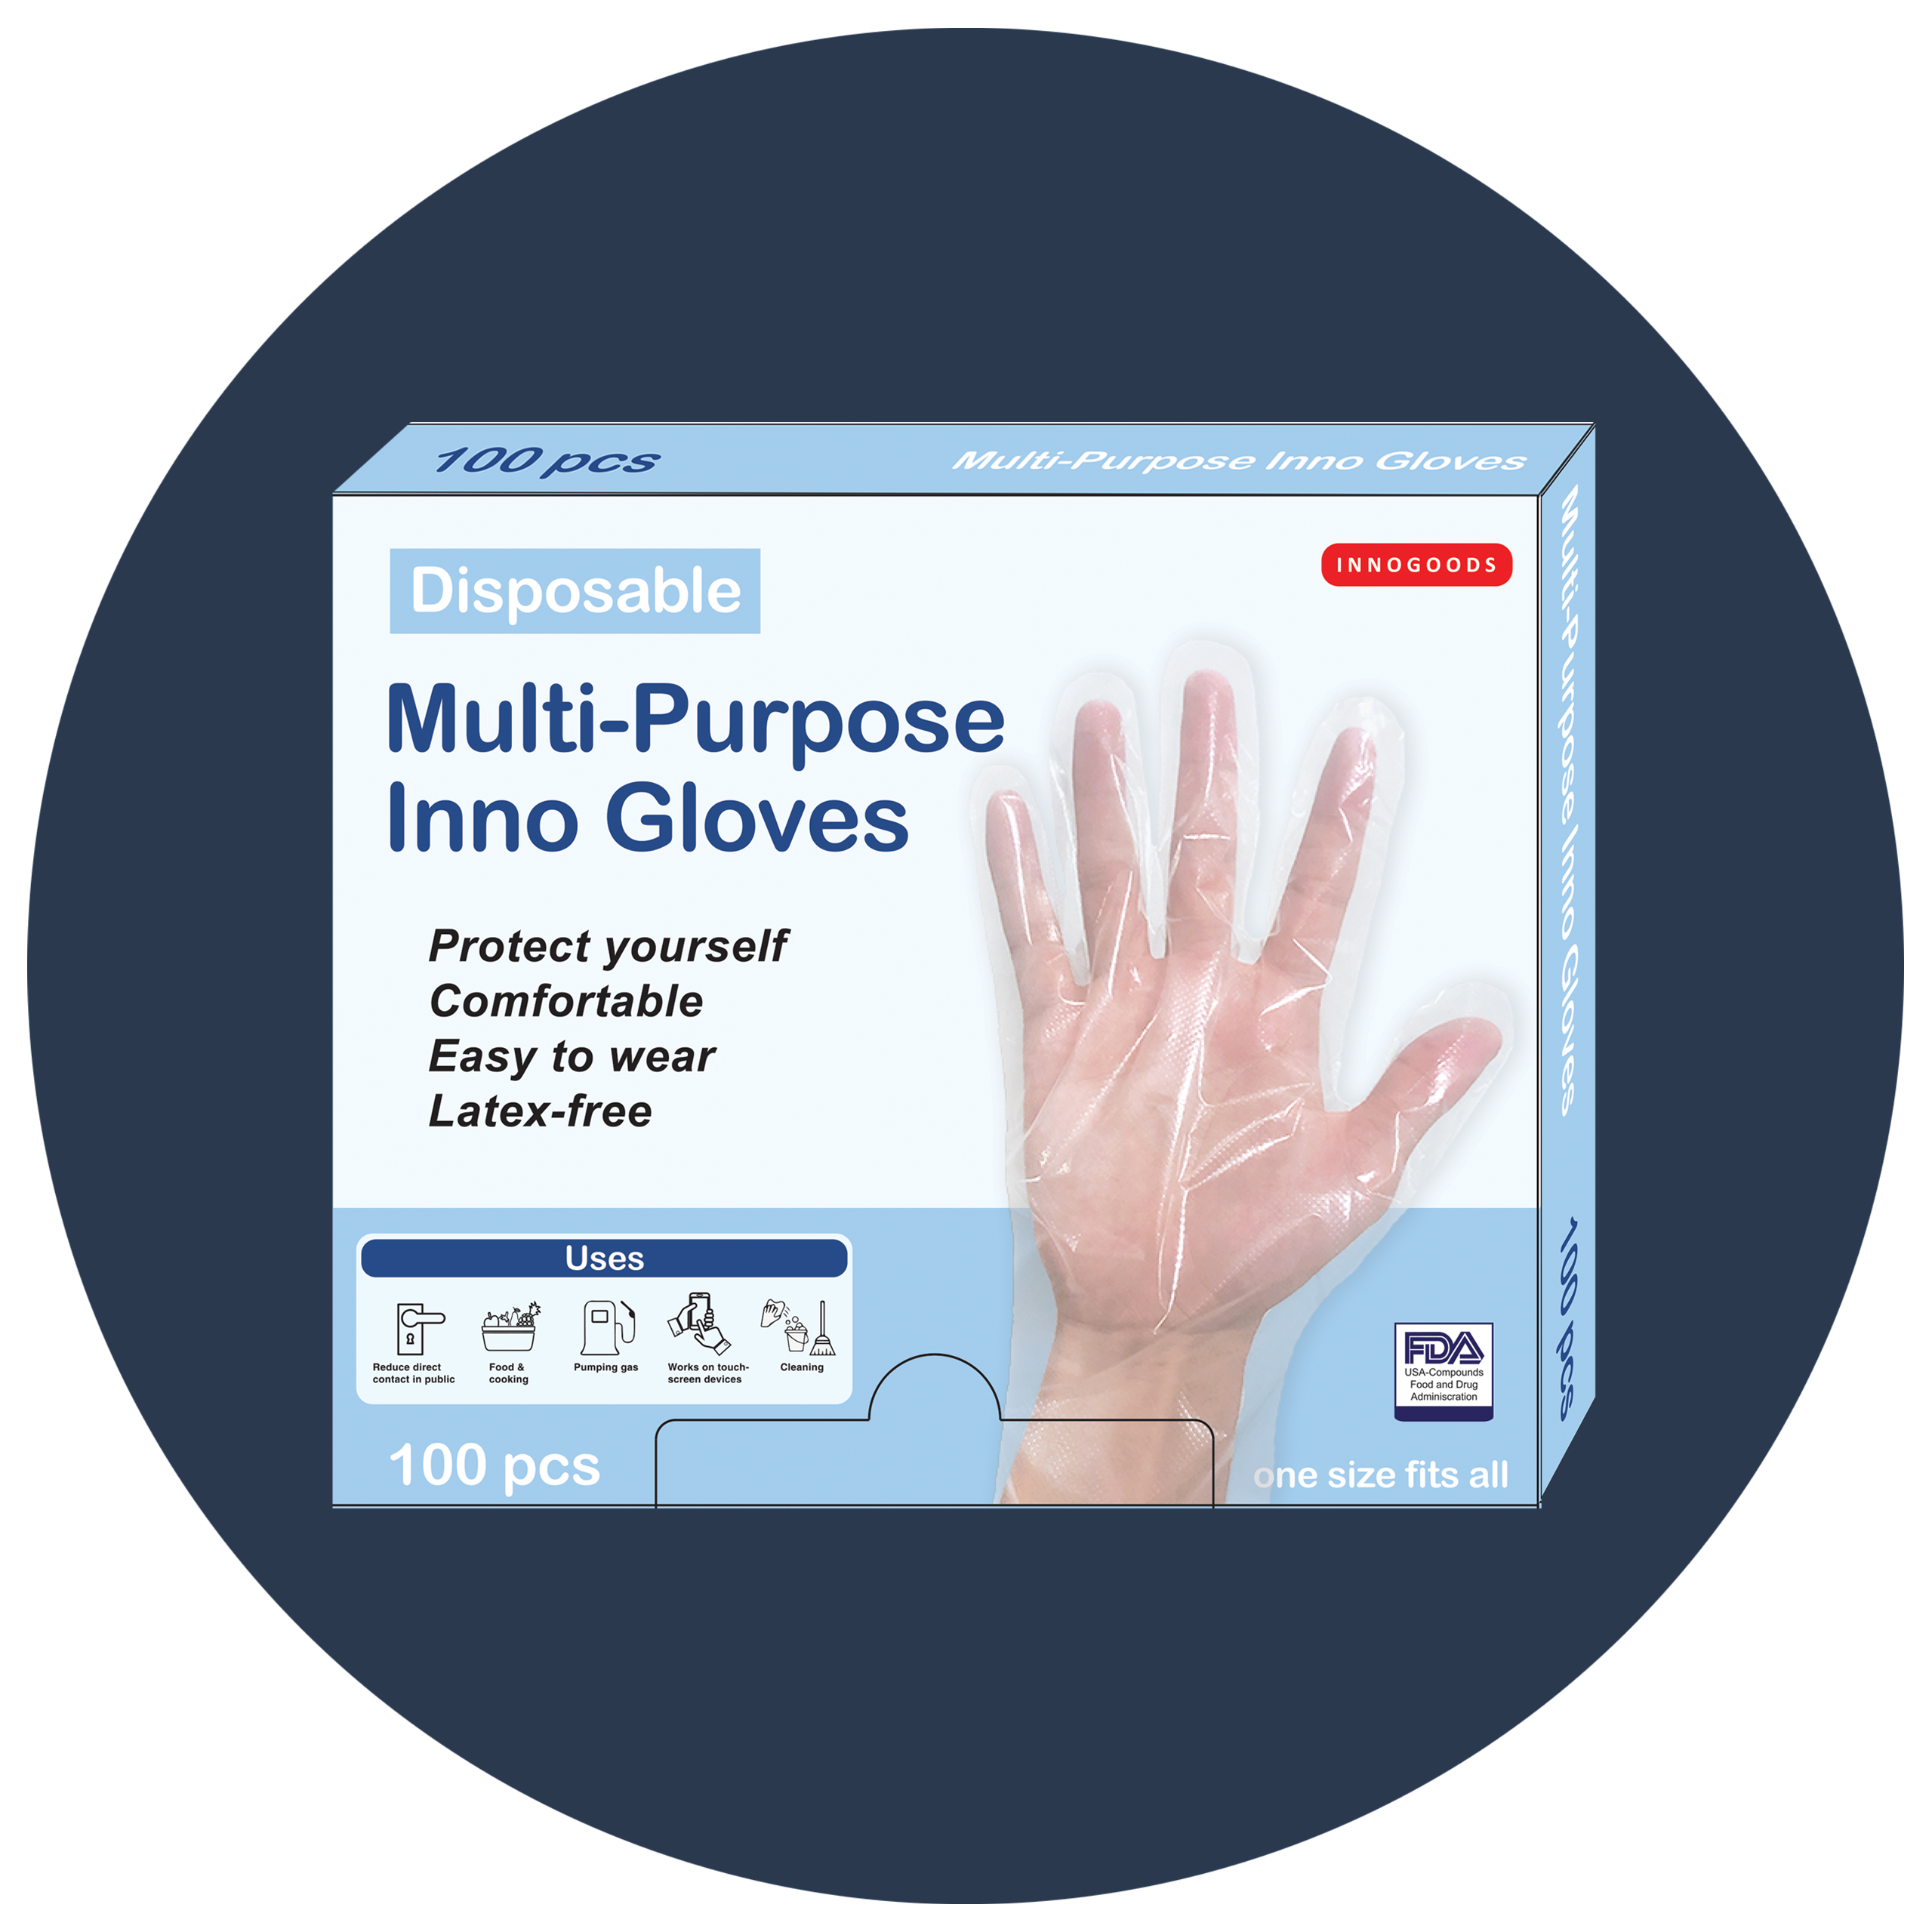 Multi-Purpose Inno Gloves